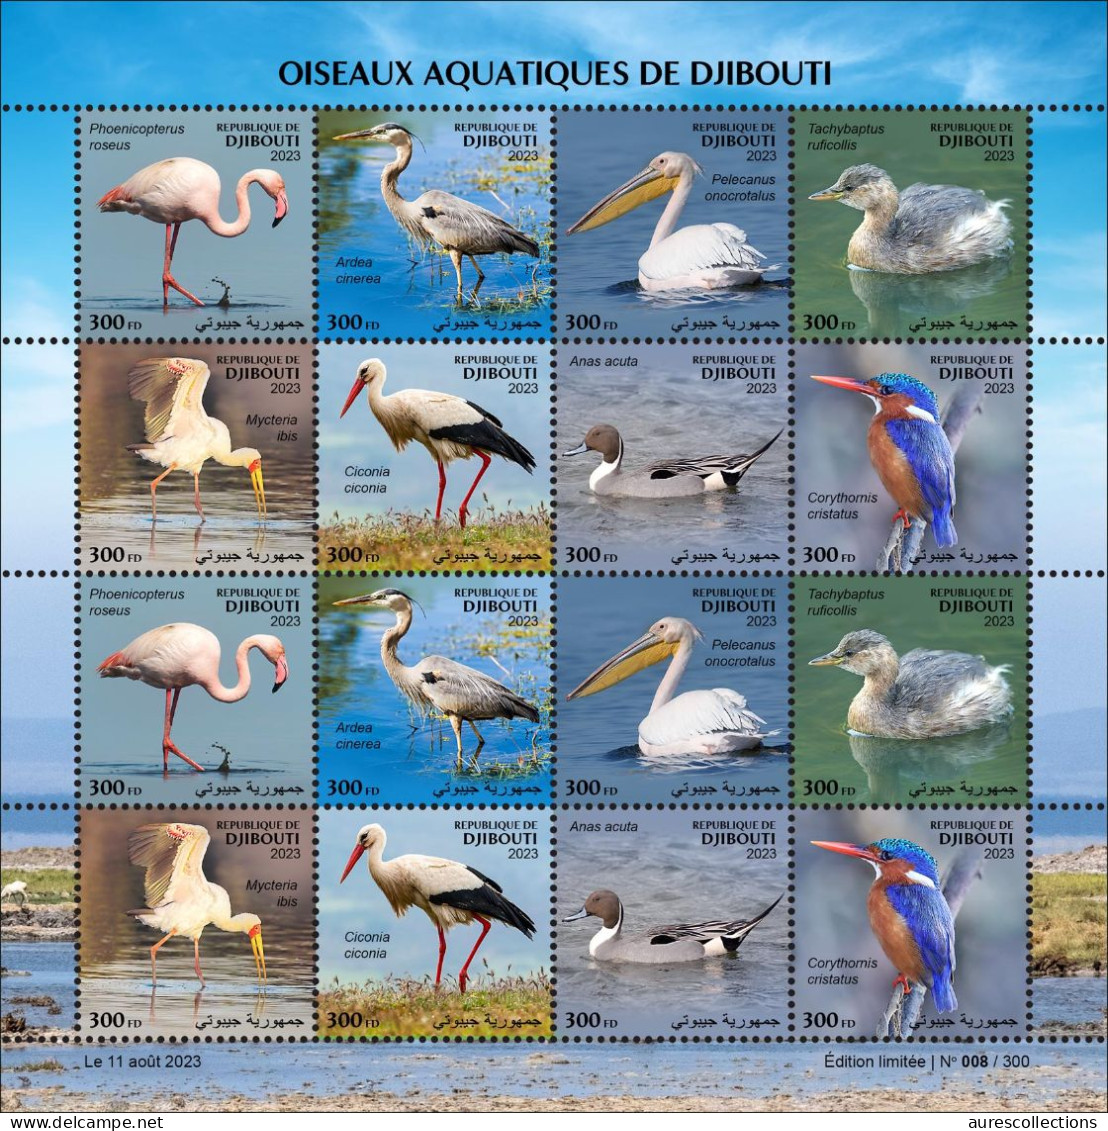 DJIBOUTI 2023 - M/S 16V - WATER SEA AQUATIC BIRDS BIRD OISEAUX AQUATIQUES - FLAMINGO PELICAN DUCK DUCKS CANARDS - MNH - Flamants